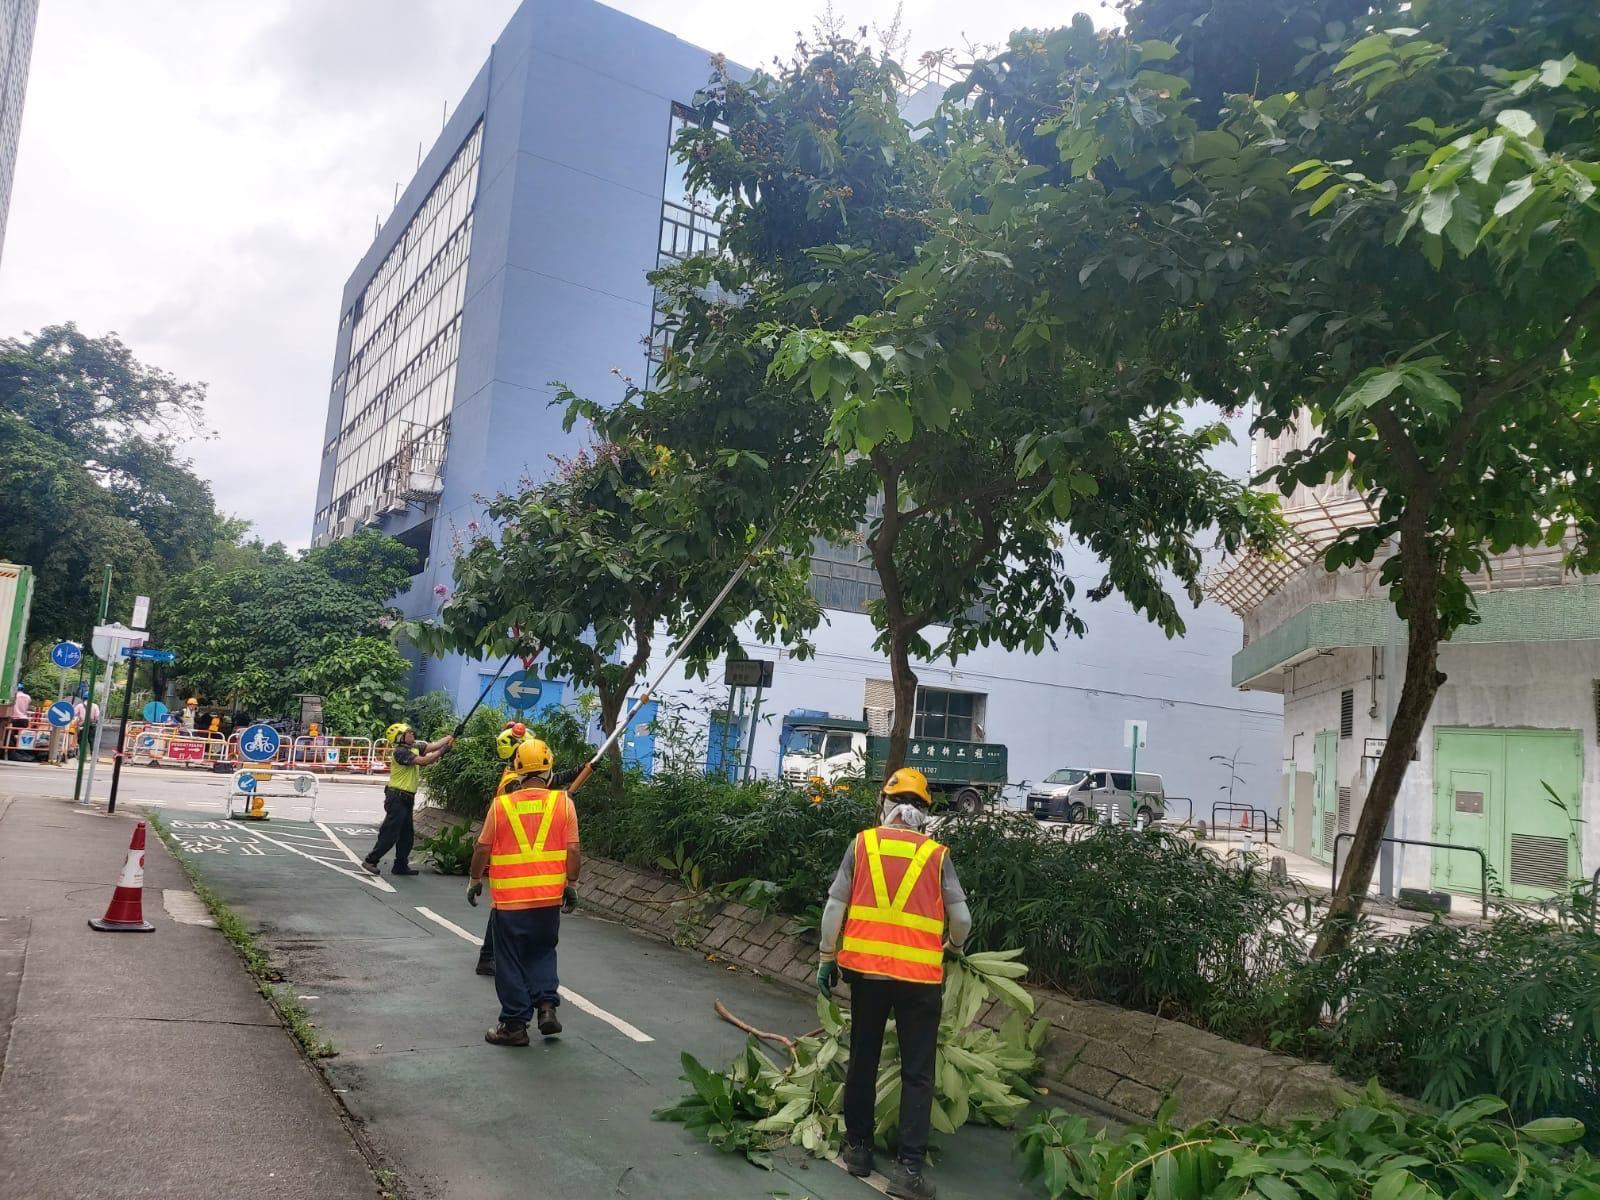 發展局樹木管理辦事處因應超強颱風蘇拉提醒樹木管理部門採取風險緩減措施。圖示康樂及文化事務署今日（八月三十一日）安排人員減裁樹冠以減低樹木被吹倒的風險。